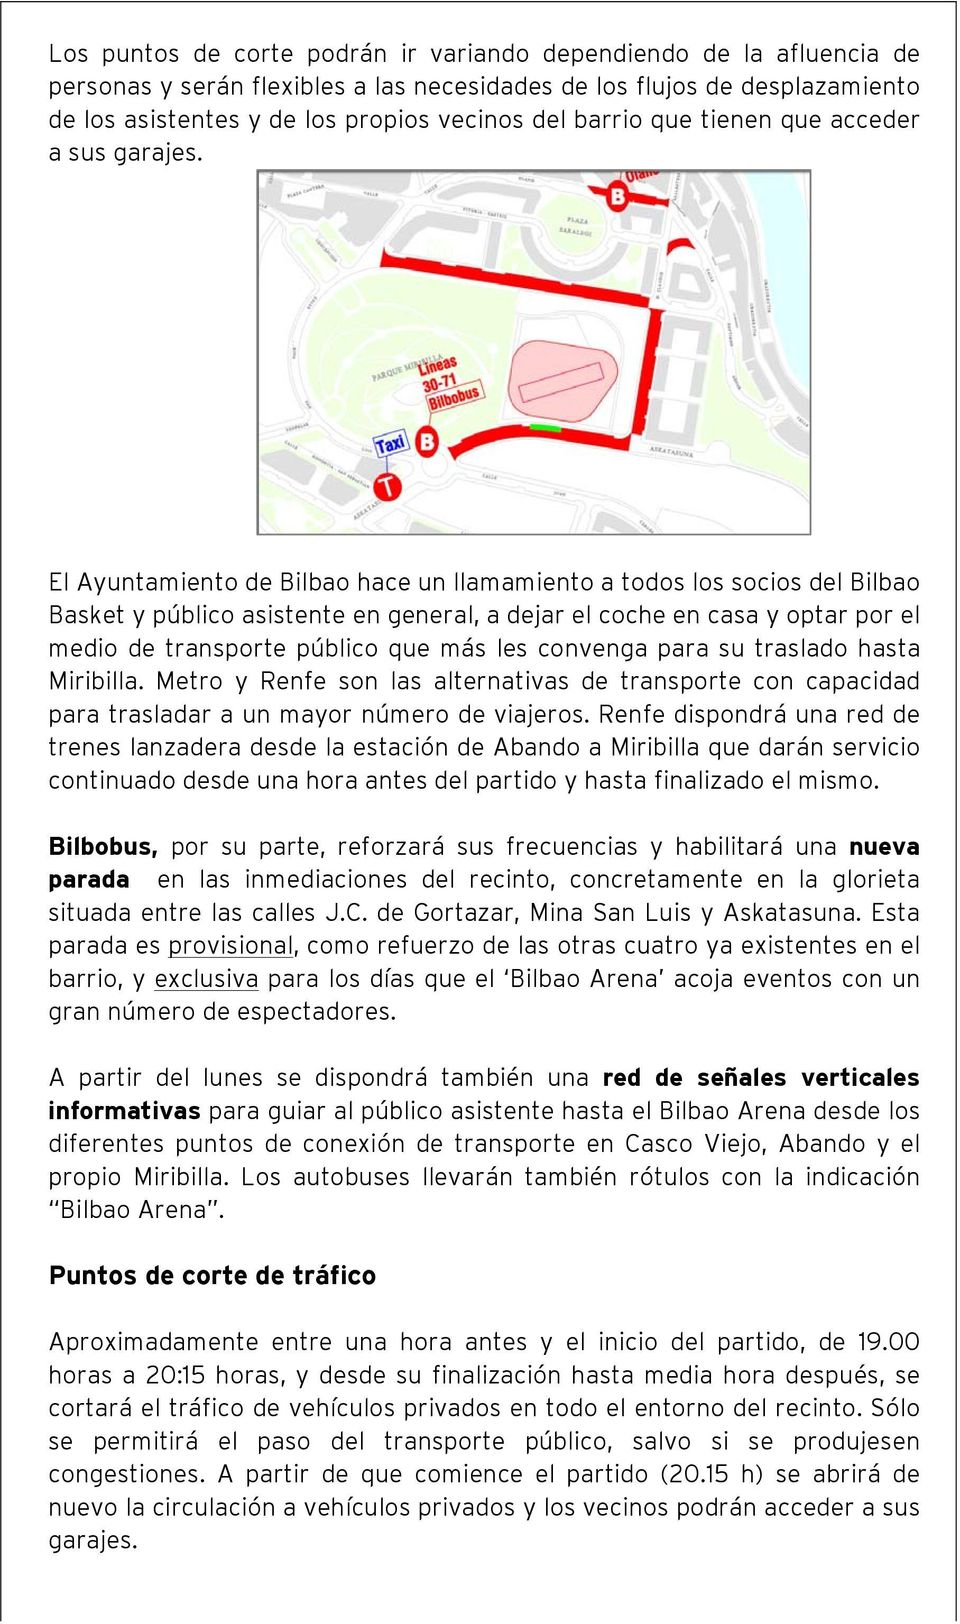 El Ayuntamiento de Bilbao hace un llamamiento a todos los socios del Bilbao Basket y público asistente en general, a dejar el coche en casa y optar por el medio de transporte público que más les